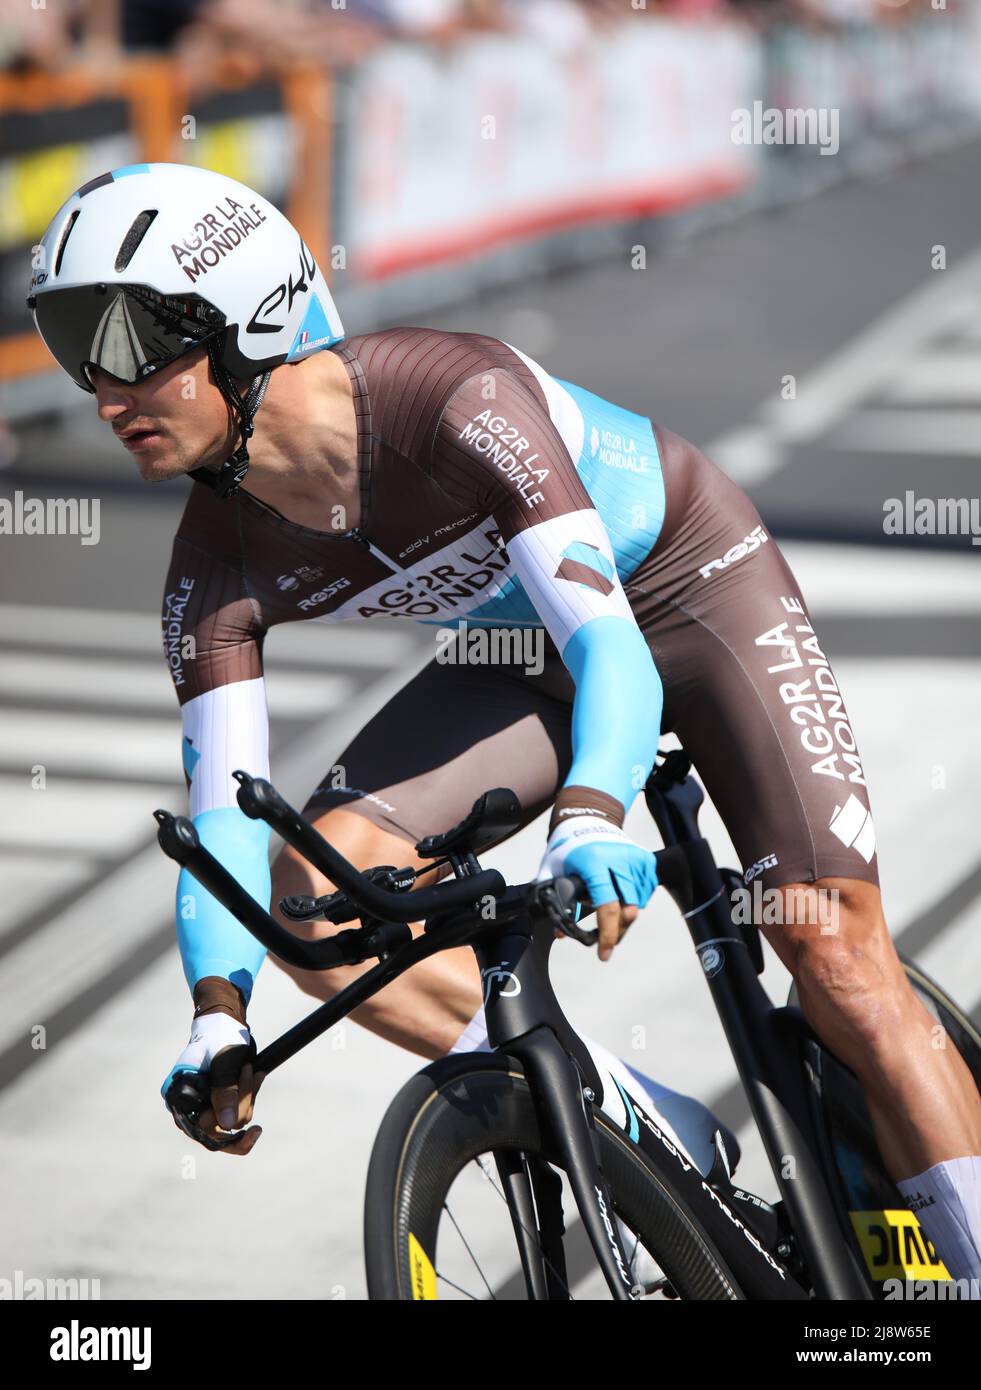 Verona, VR, Italien - 2. Juni 2019: Radfahrer VUILLERMOZ ALEXIS von AG2R Team bei der Tour of Italy auch Giro d'Italia genannt ist ein berühmtes Radrennen mit prof Stockfoto